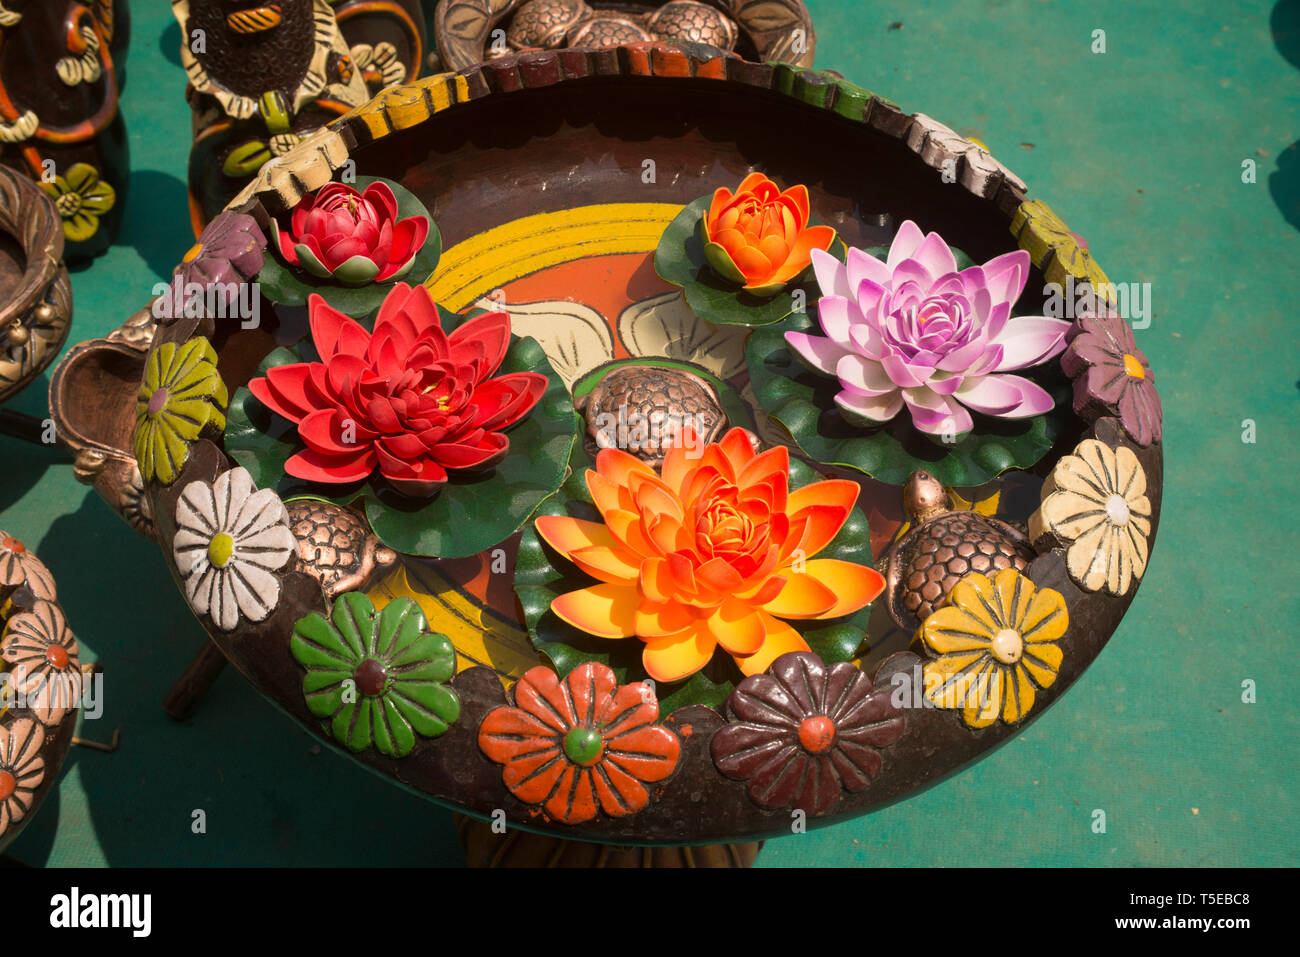 Dekorative Pflanzmaschine, gehalten für verkaufen, Thane, Maharashtra, Indien, Asien Stockfoto